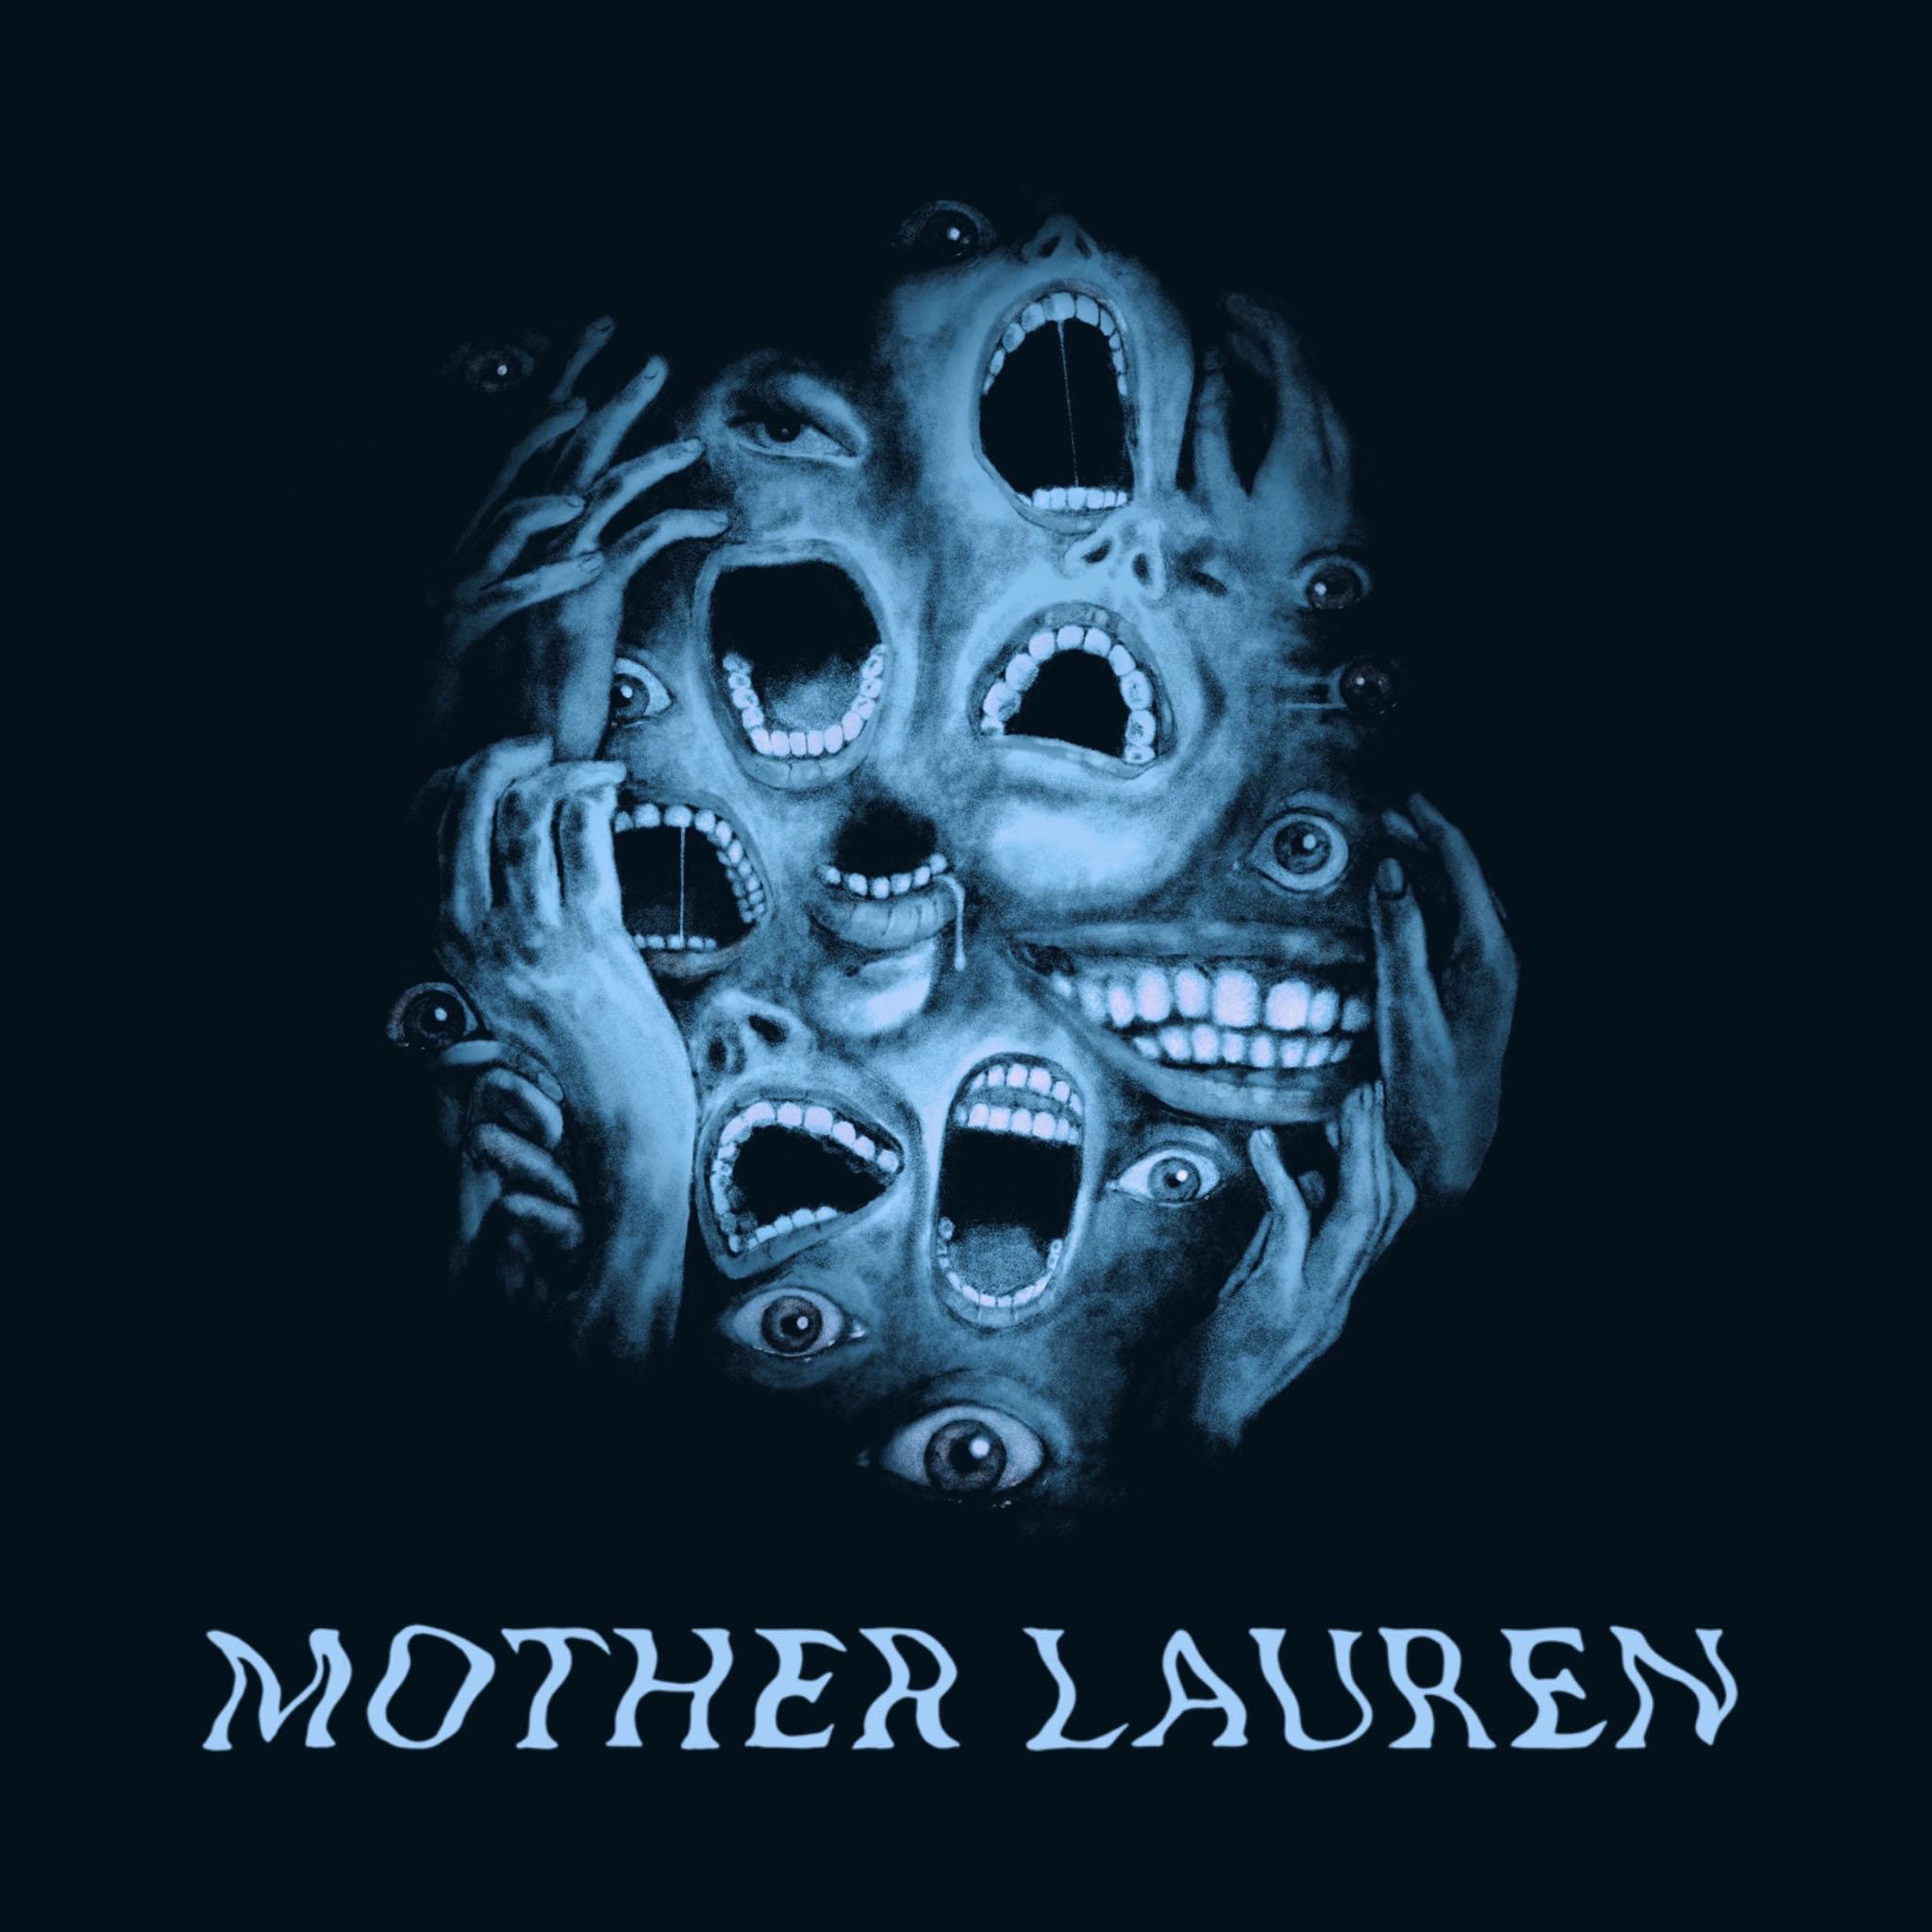 Thumbnail for "248 - Mother Lauren".